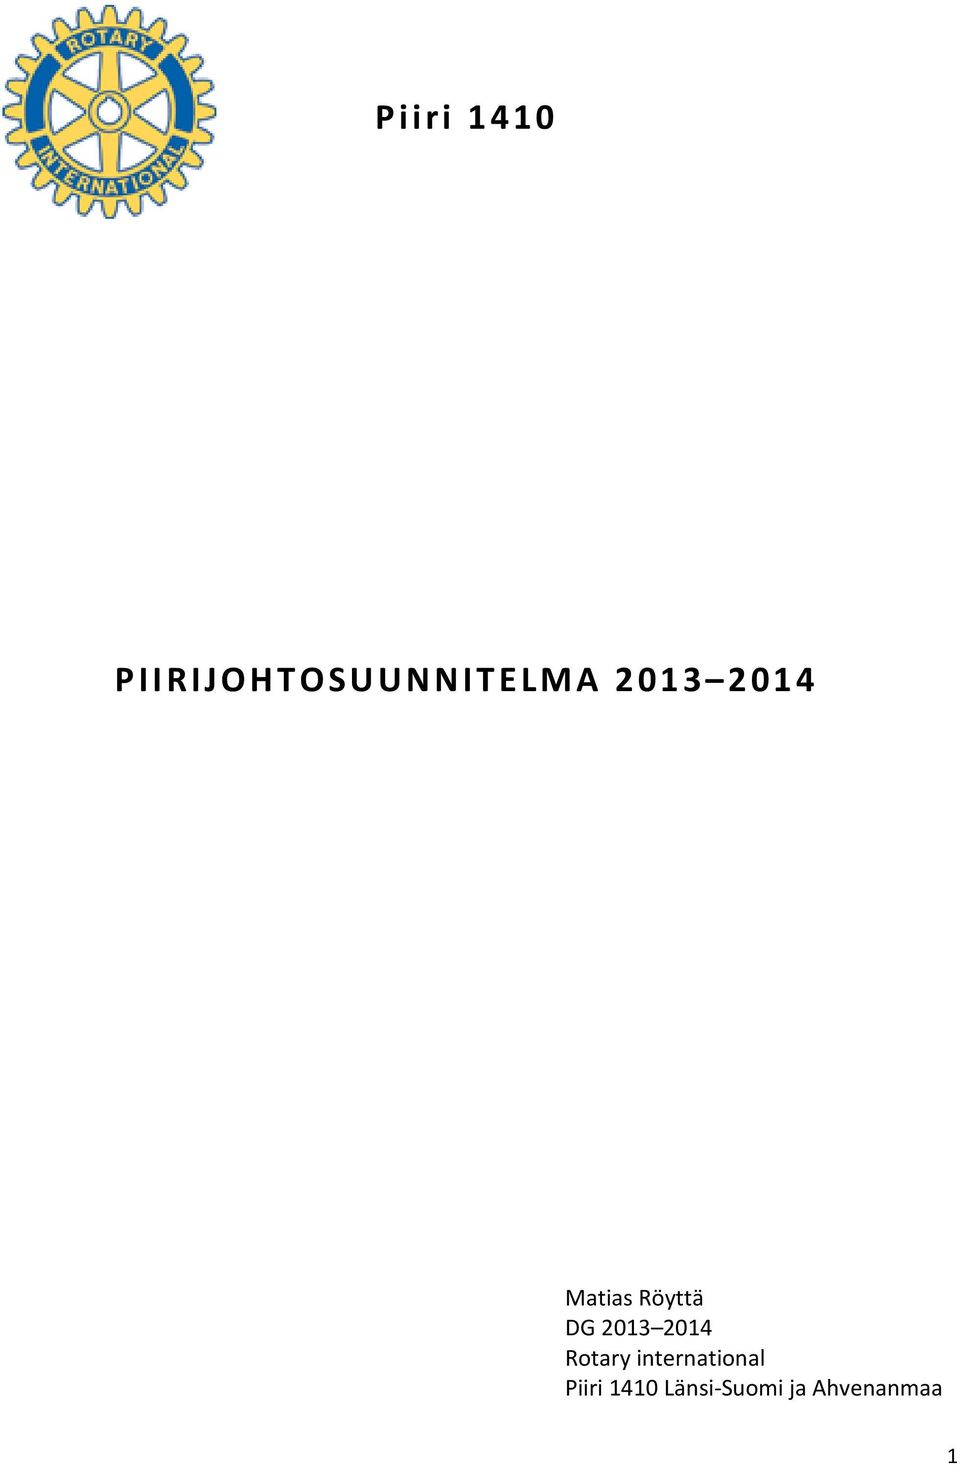 2014 Rotary international Piiri